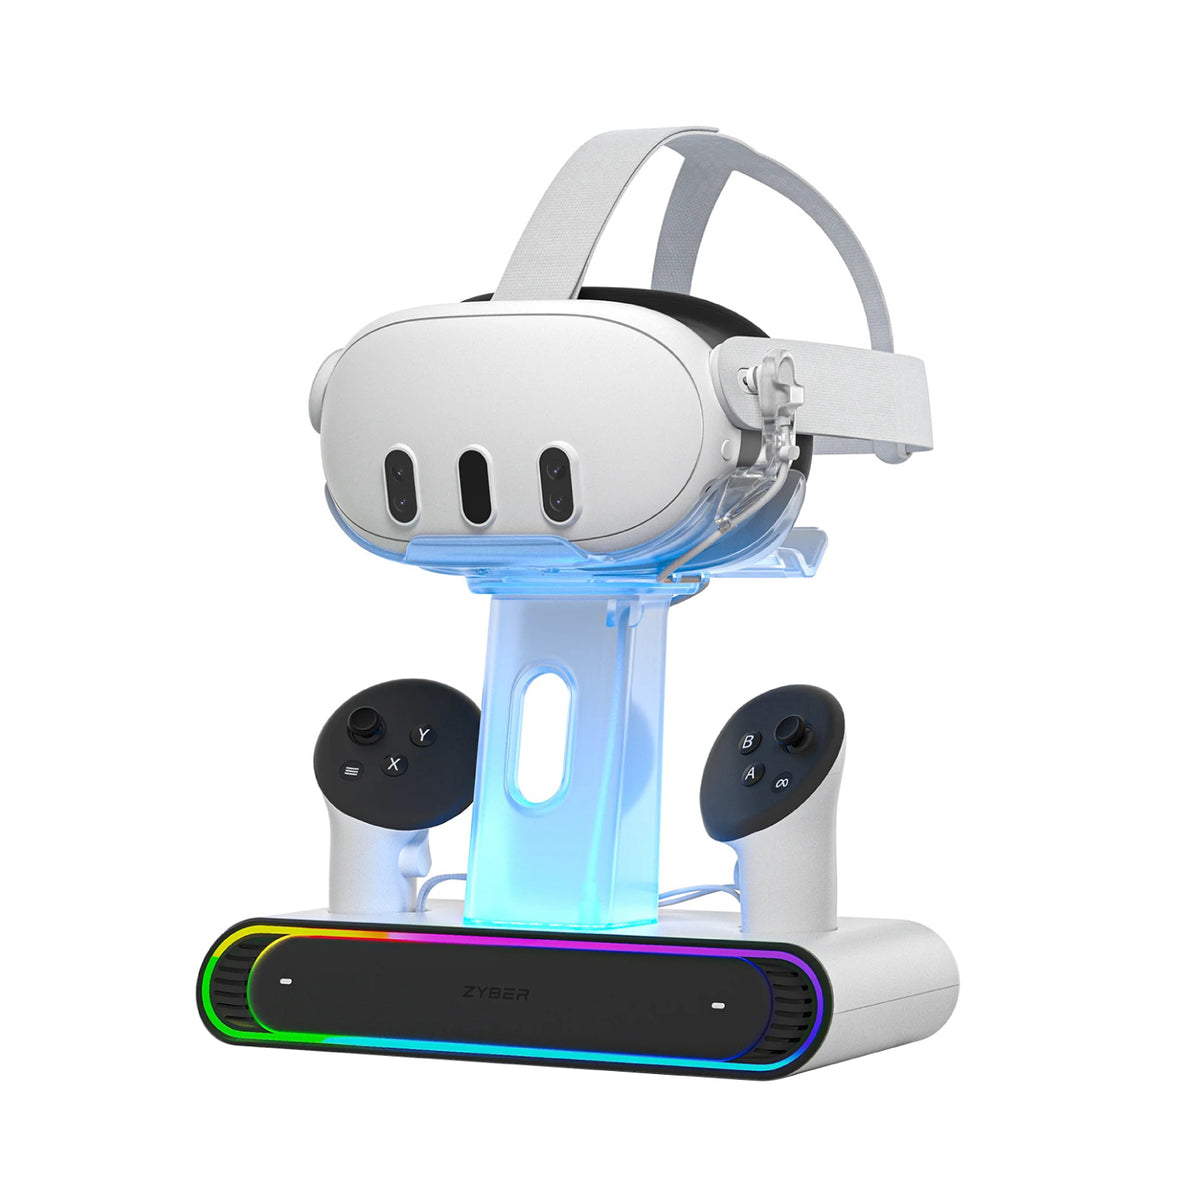 VR Accessories Going Pro | ZyberVR Premium VR Headset Accessories